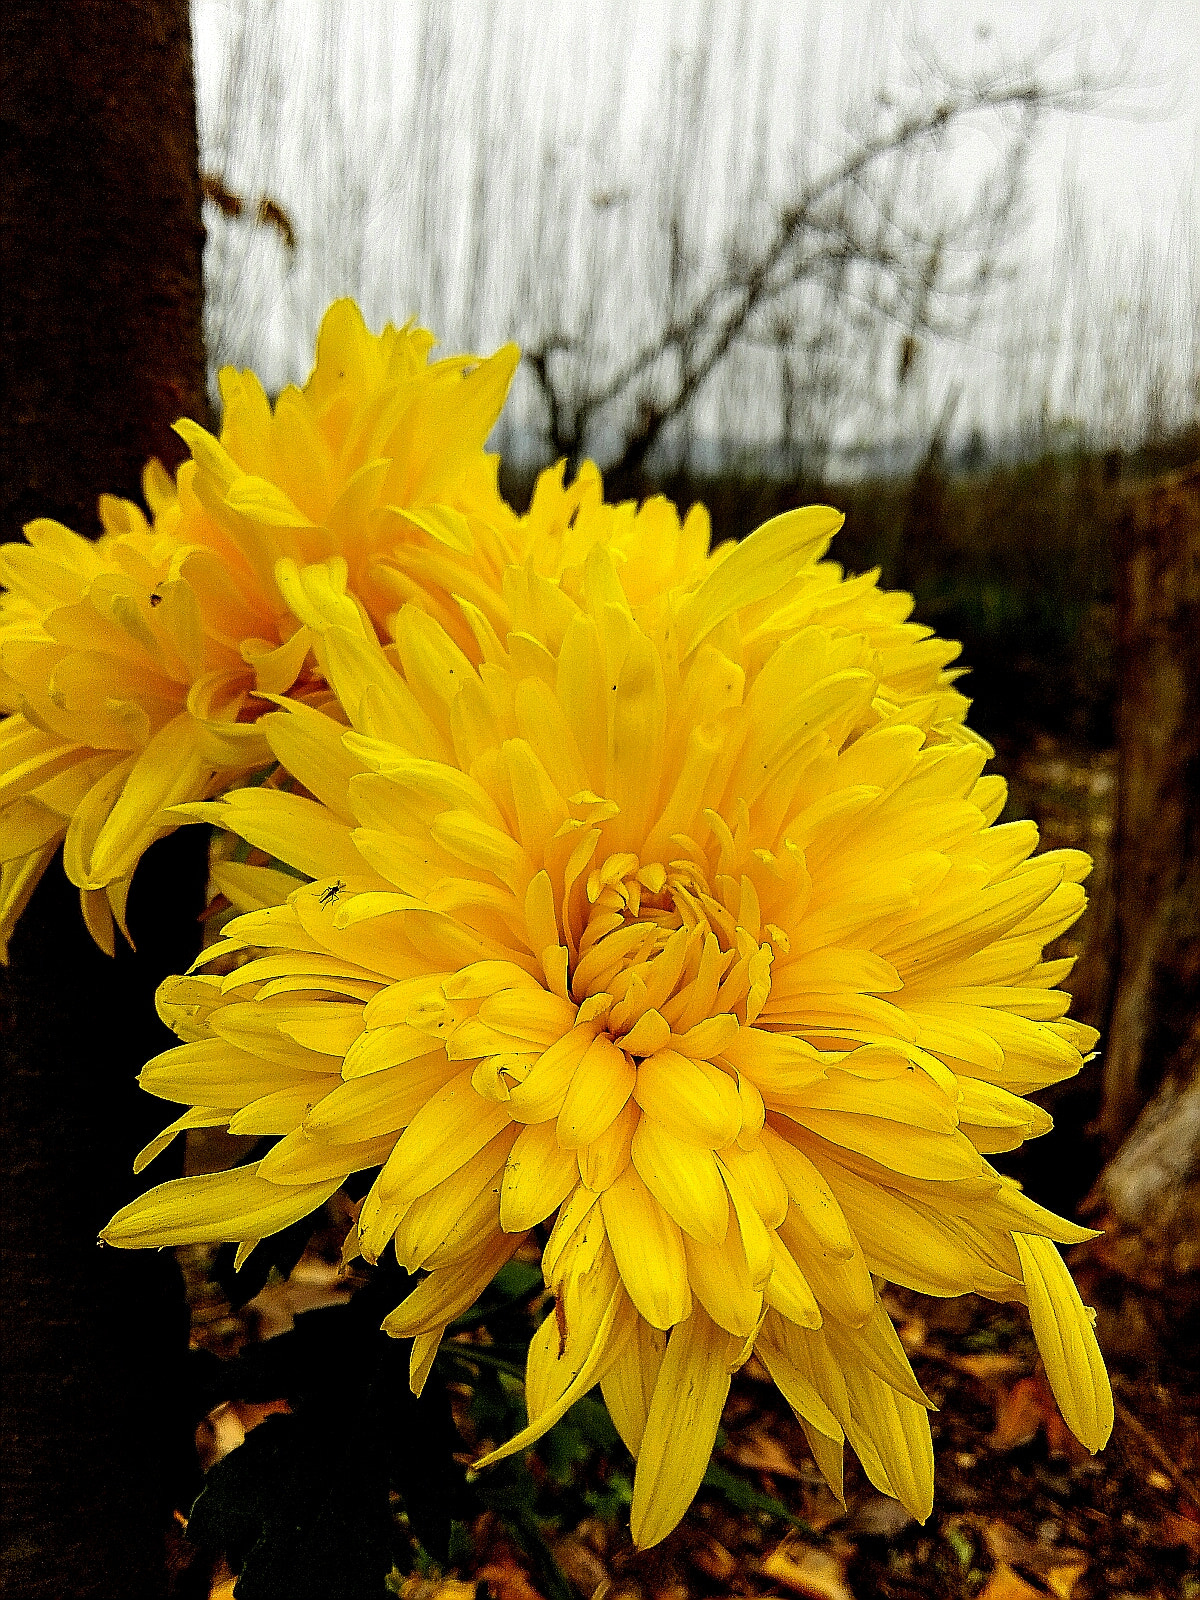 HUAWEI MediaPad X1 7.0 sample photo. Chrysanthemum photography